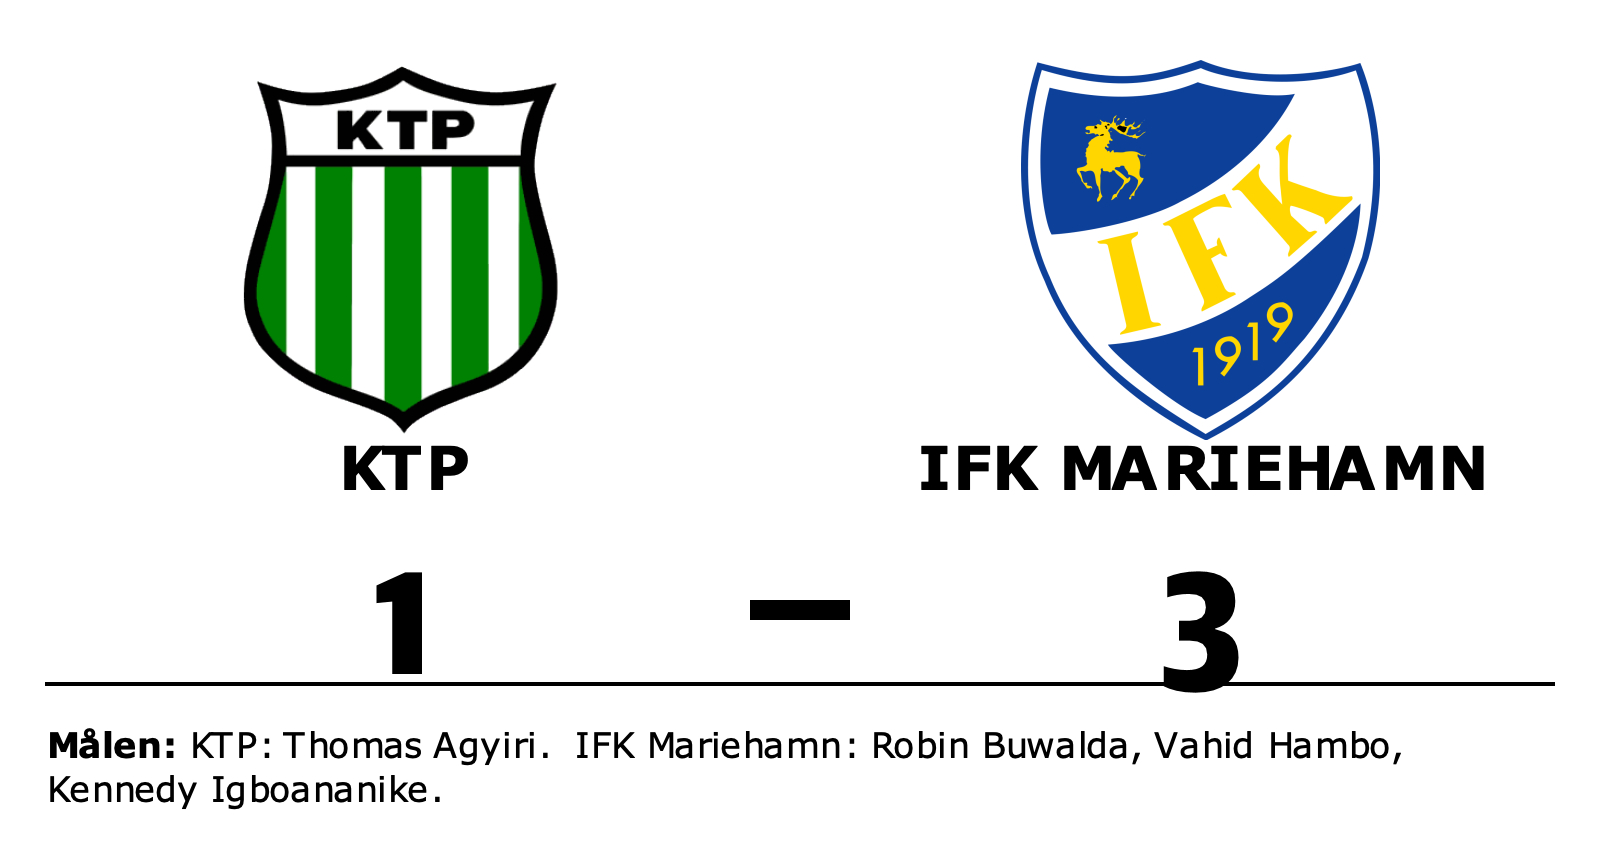 KTP förlorade mot IFK Mariehamn